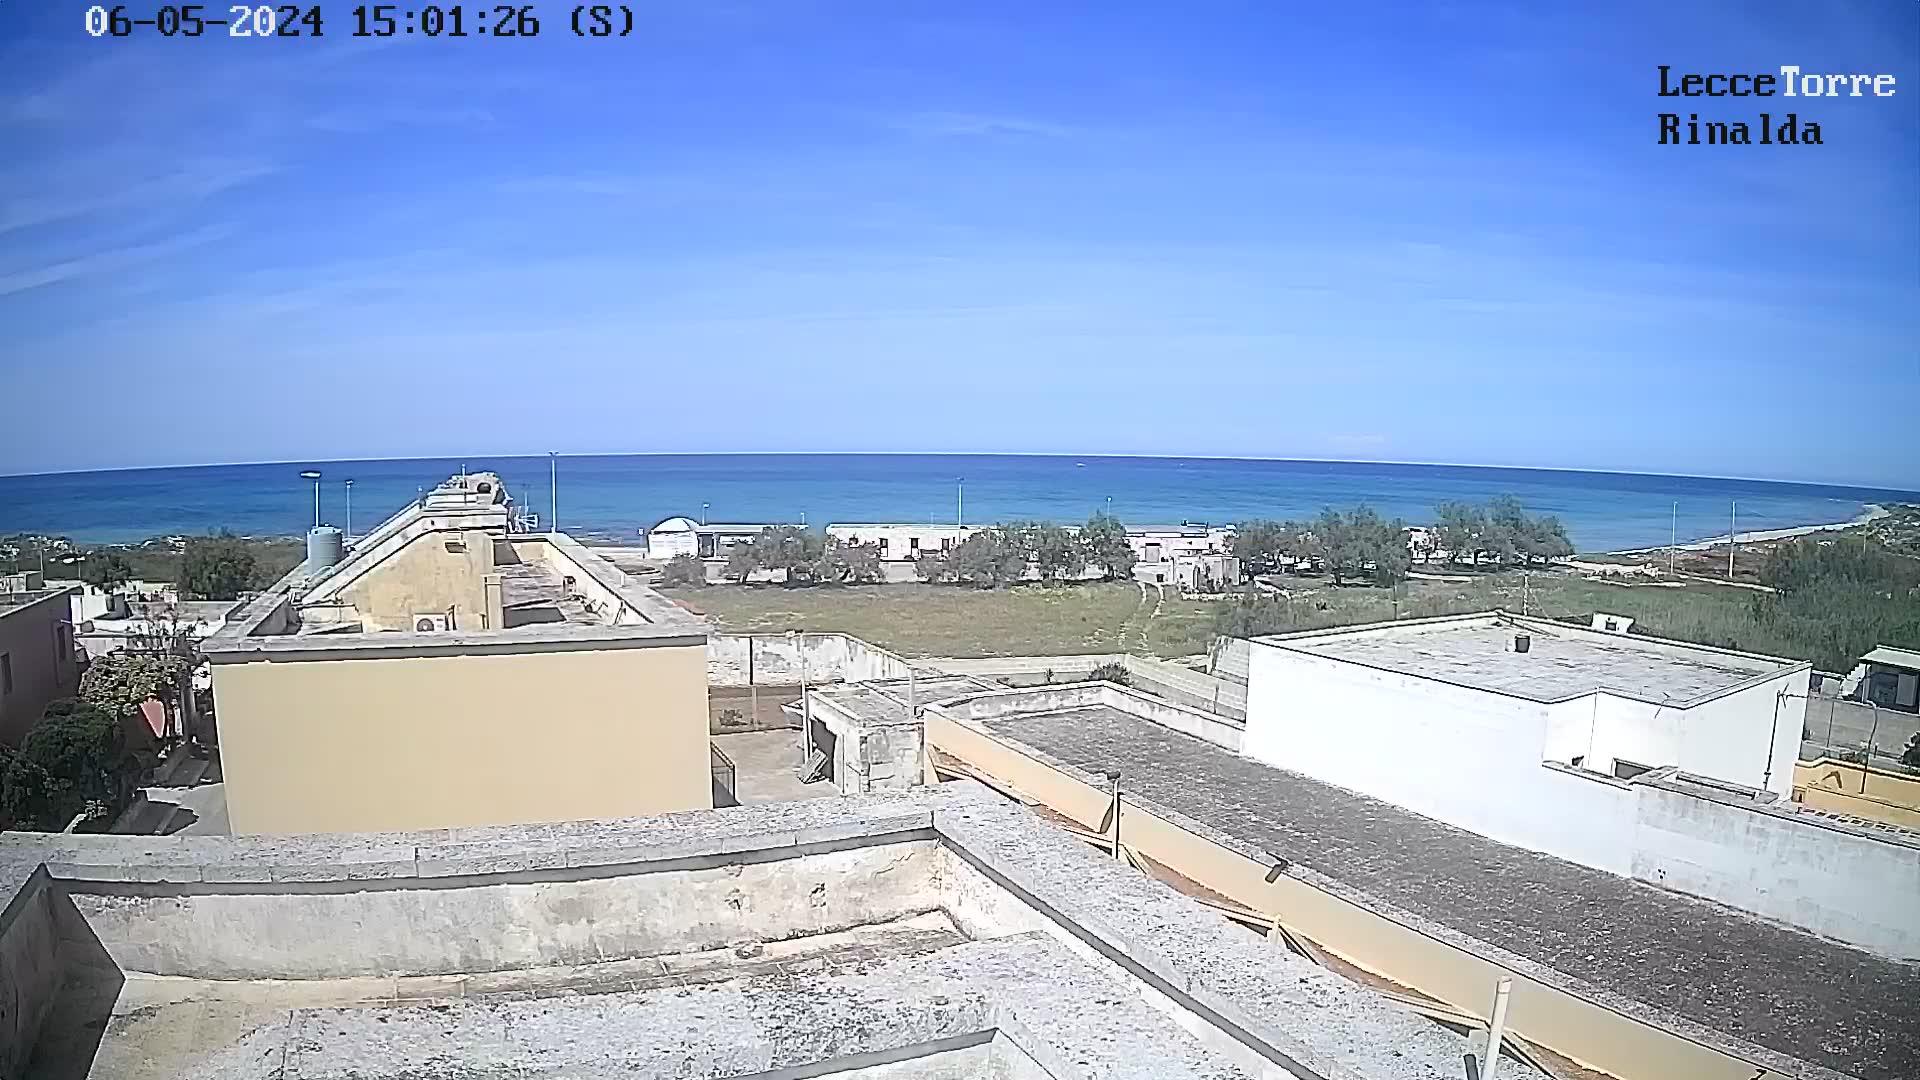 Webcam Lecce, Torre Rinalda - RTSP